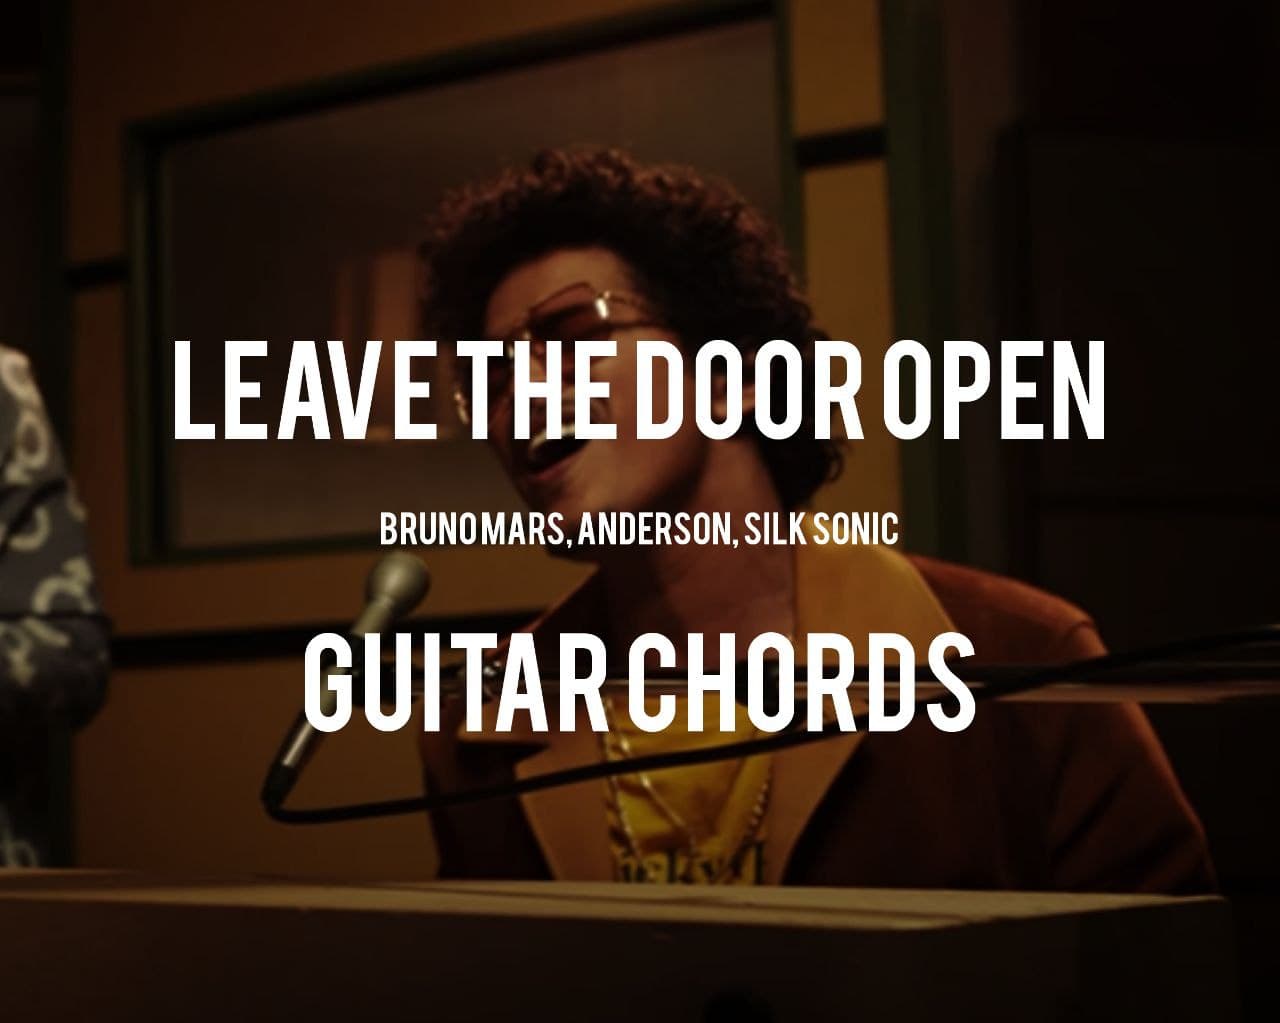 Leave the door open guitar chords